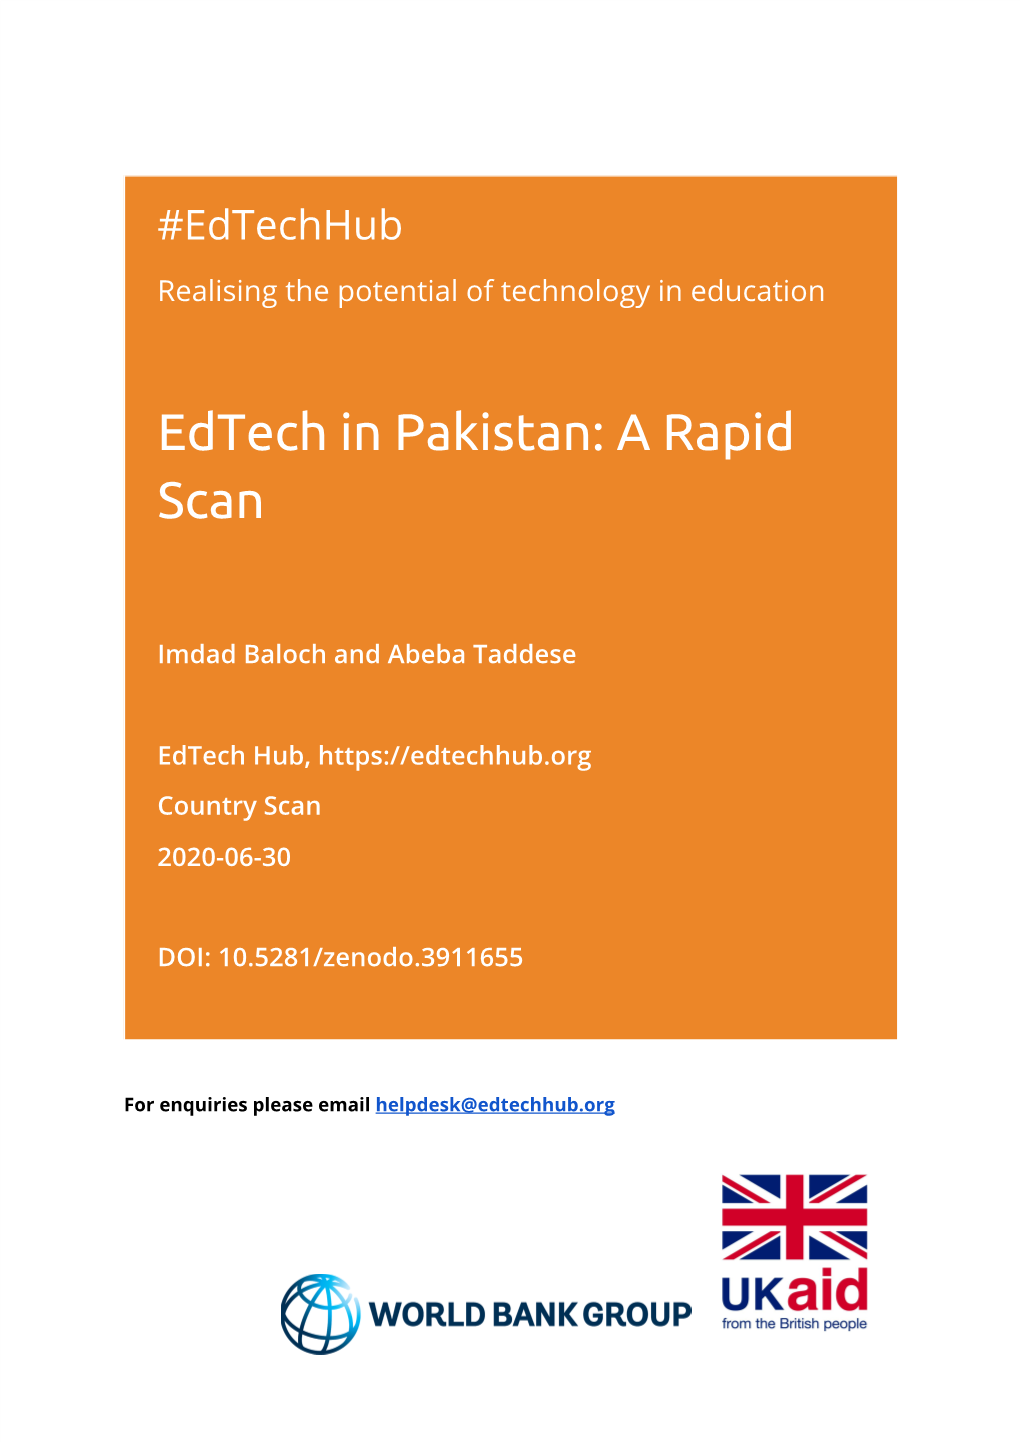 Edtech in Pakistan: a Rapid Scan